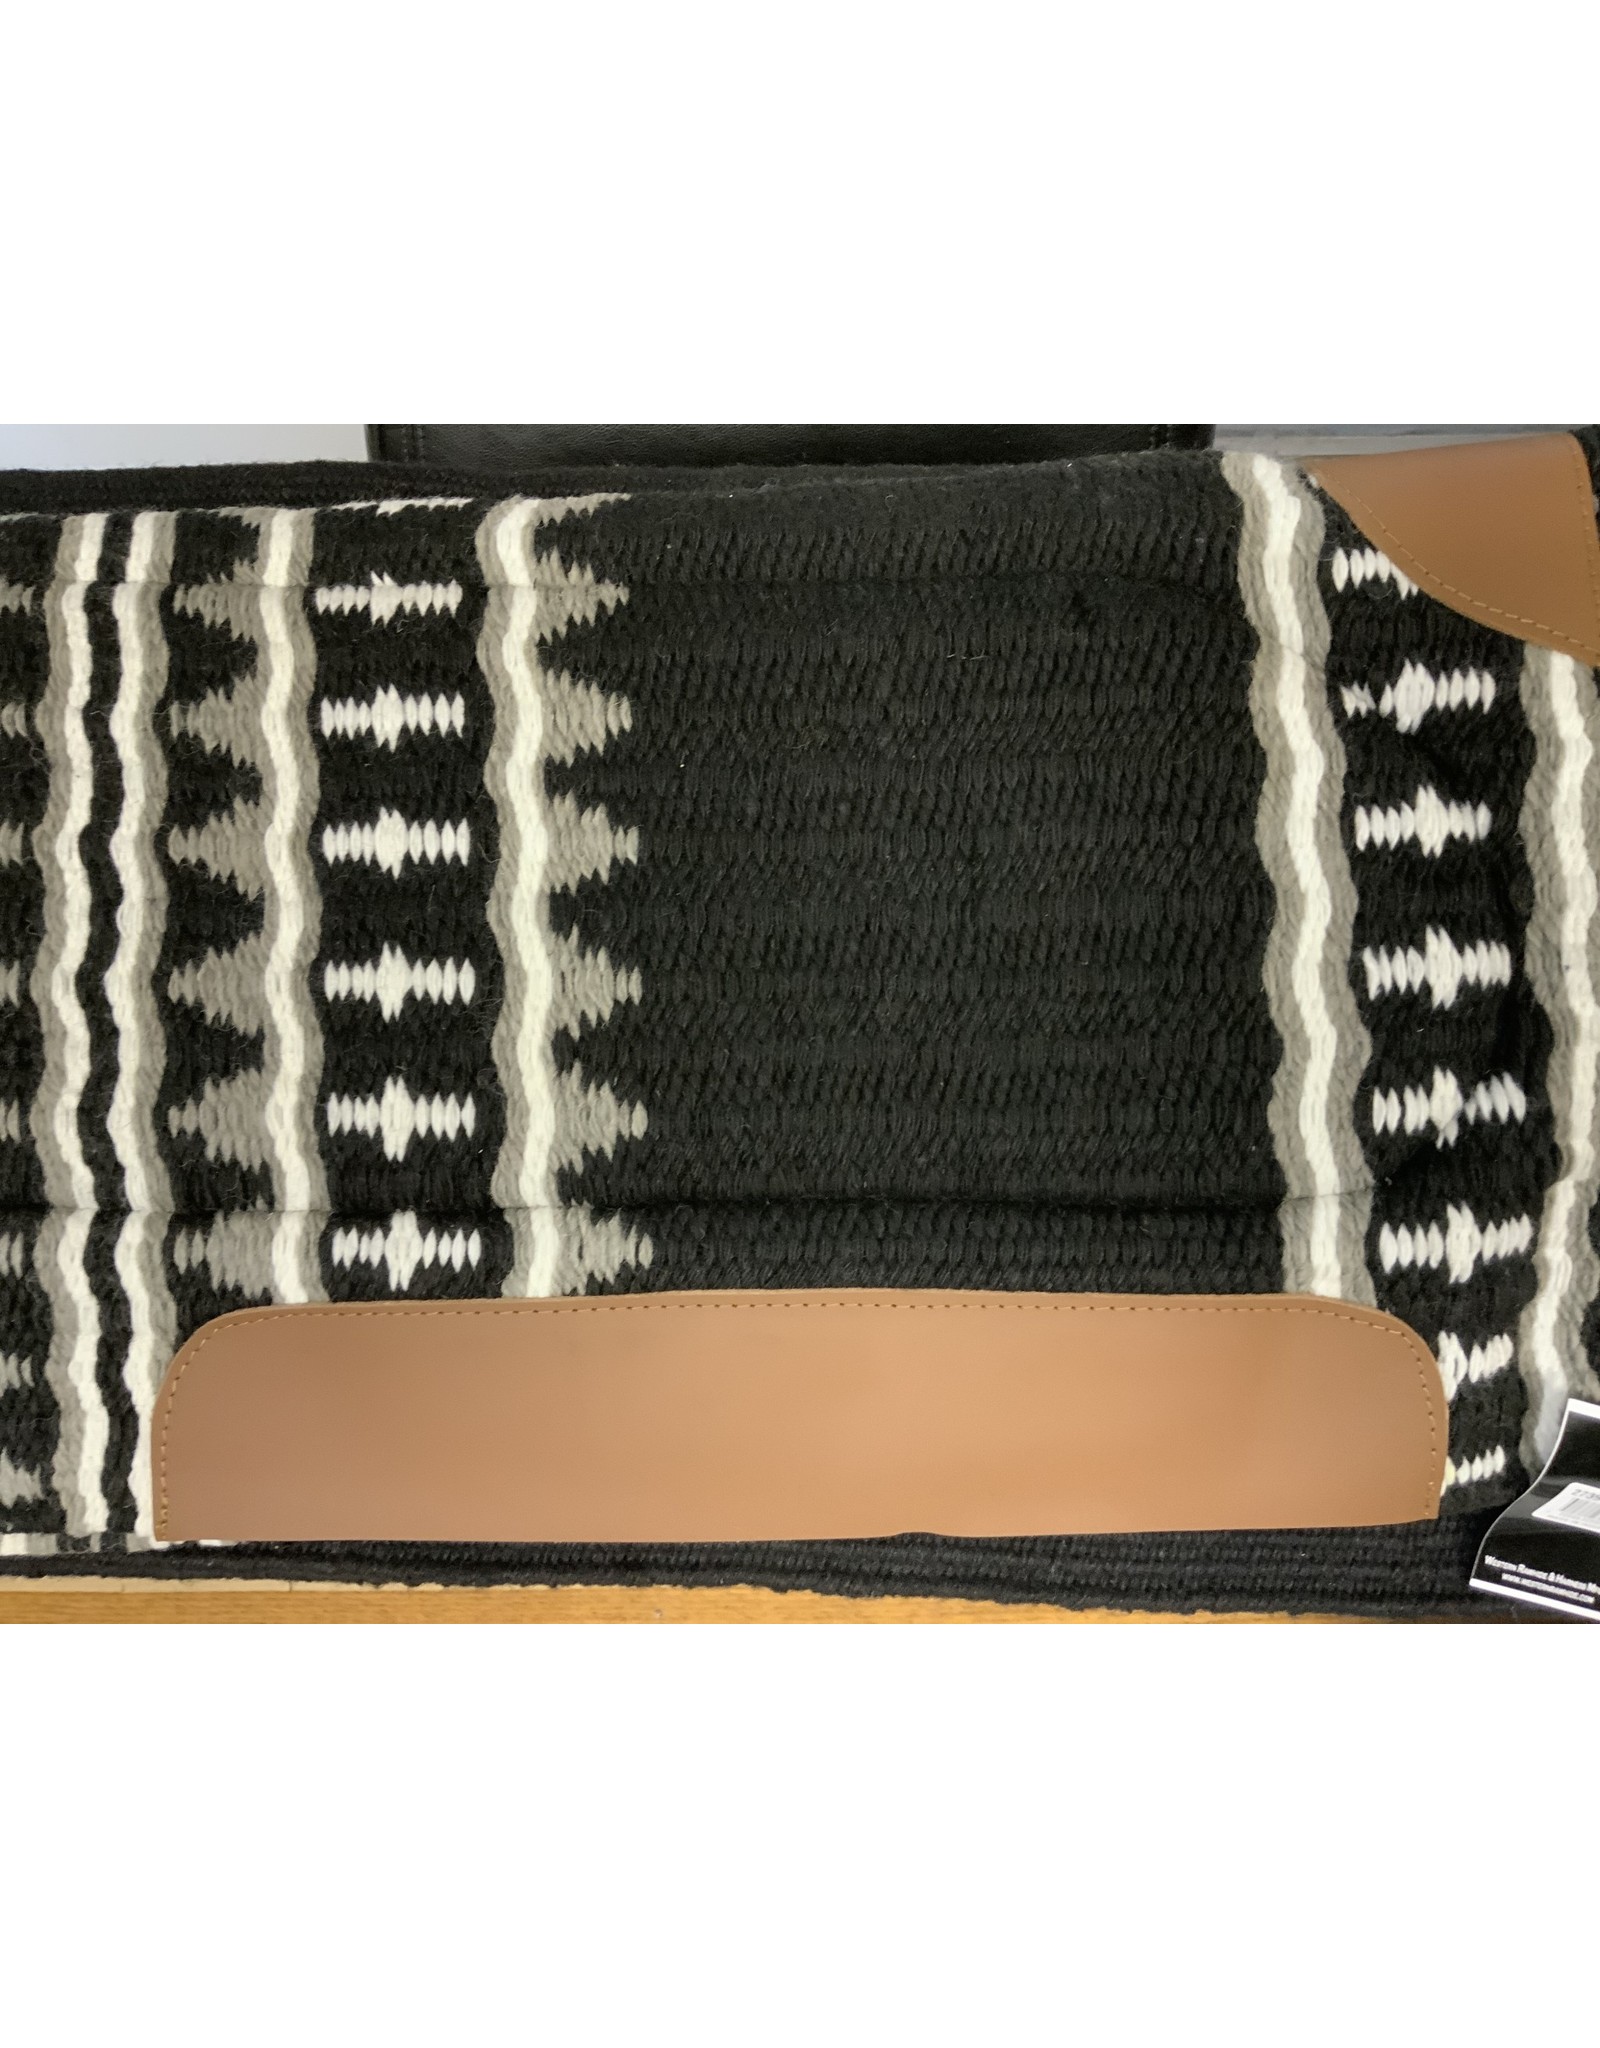 Country Legend New Zealand Wool Saddle Pad 3/4" Acrylic Felt Lining 32" X 32" - Black/Grey/White 273949-27